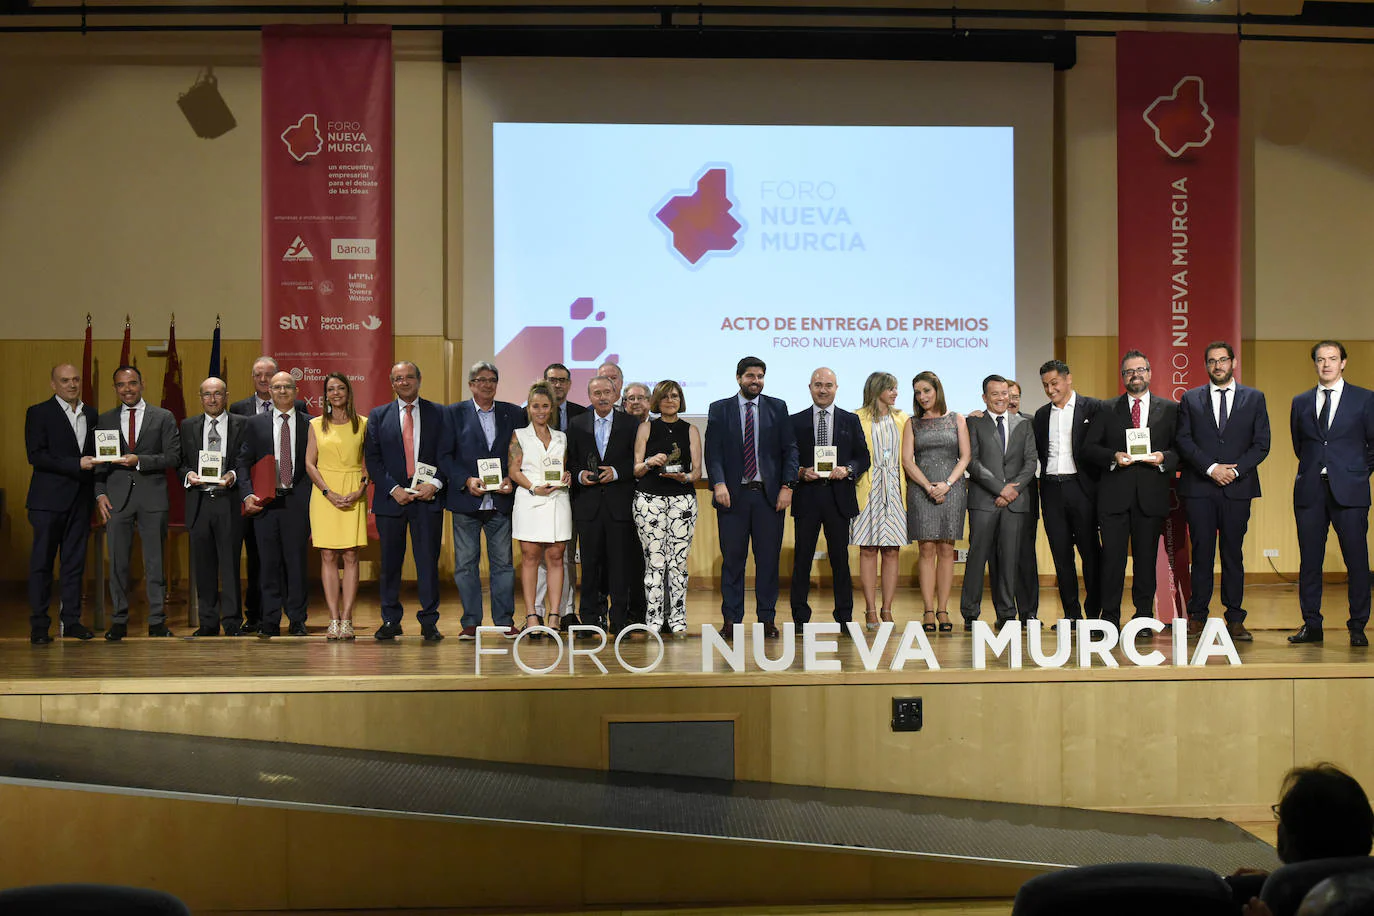 Gala de los VII Premios del Foro Nueva Murcia